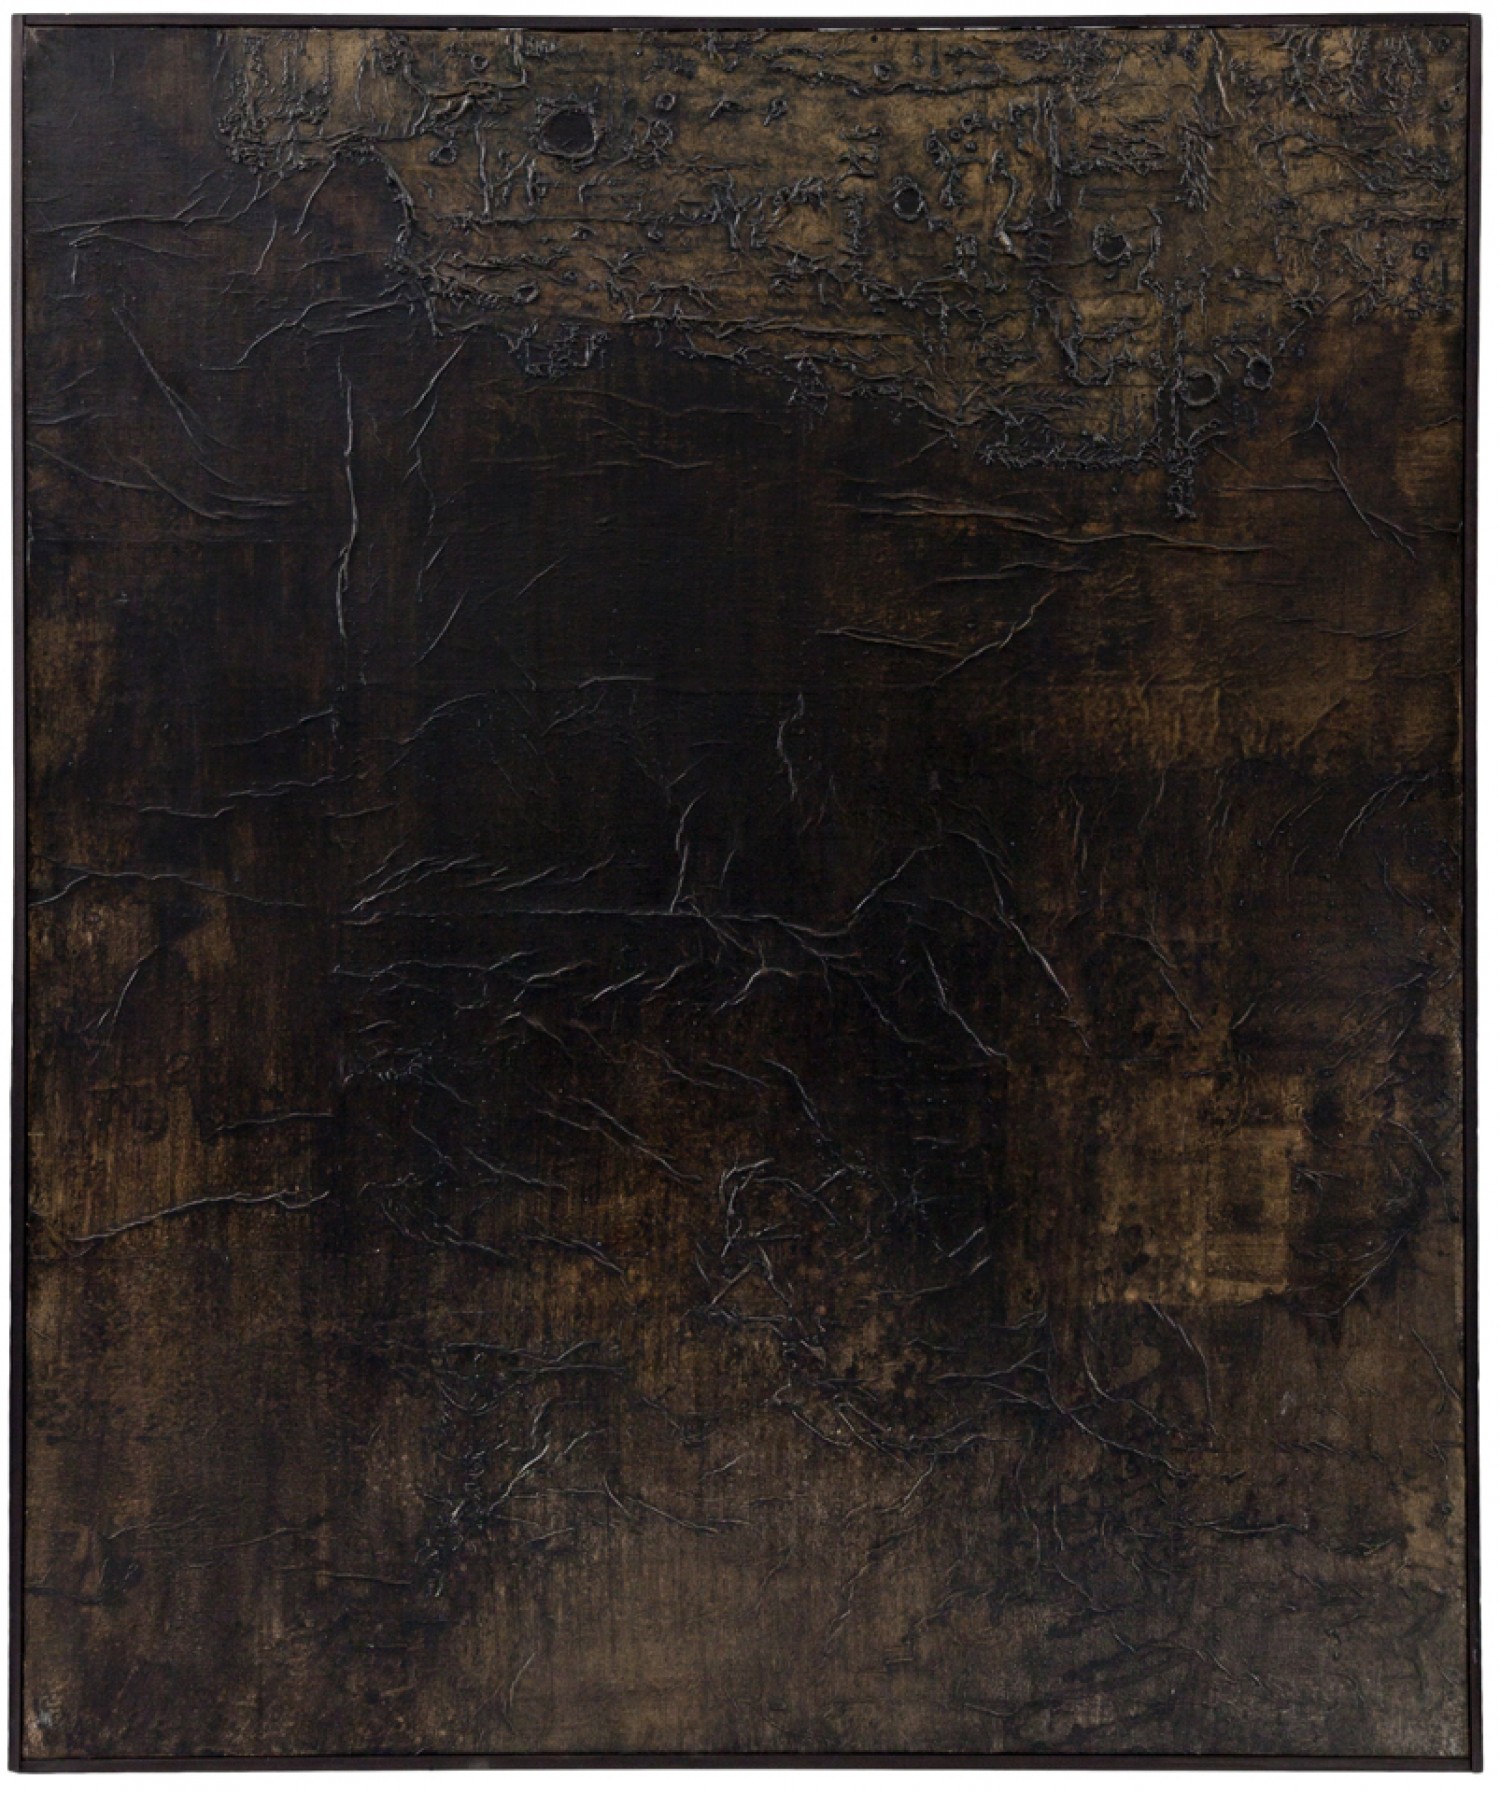 Jan Koblasa: Finis terrae I., 1961 tempera na papíře, 150 x 125 cm cena: 550 000 Kč (+ aukční provize 20%) Sýpka 18. 10. 2020